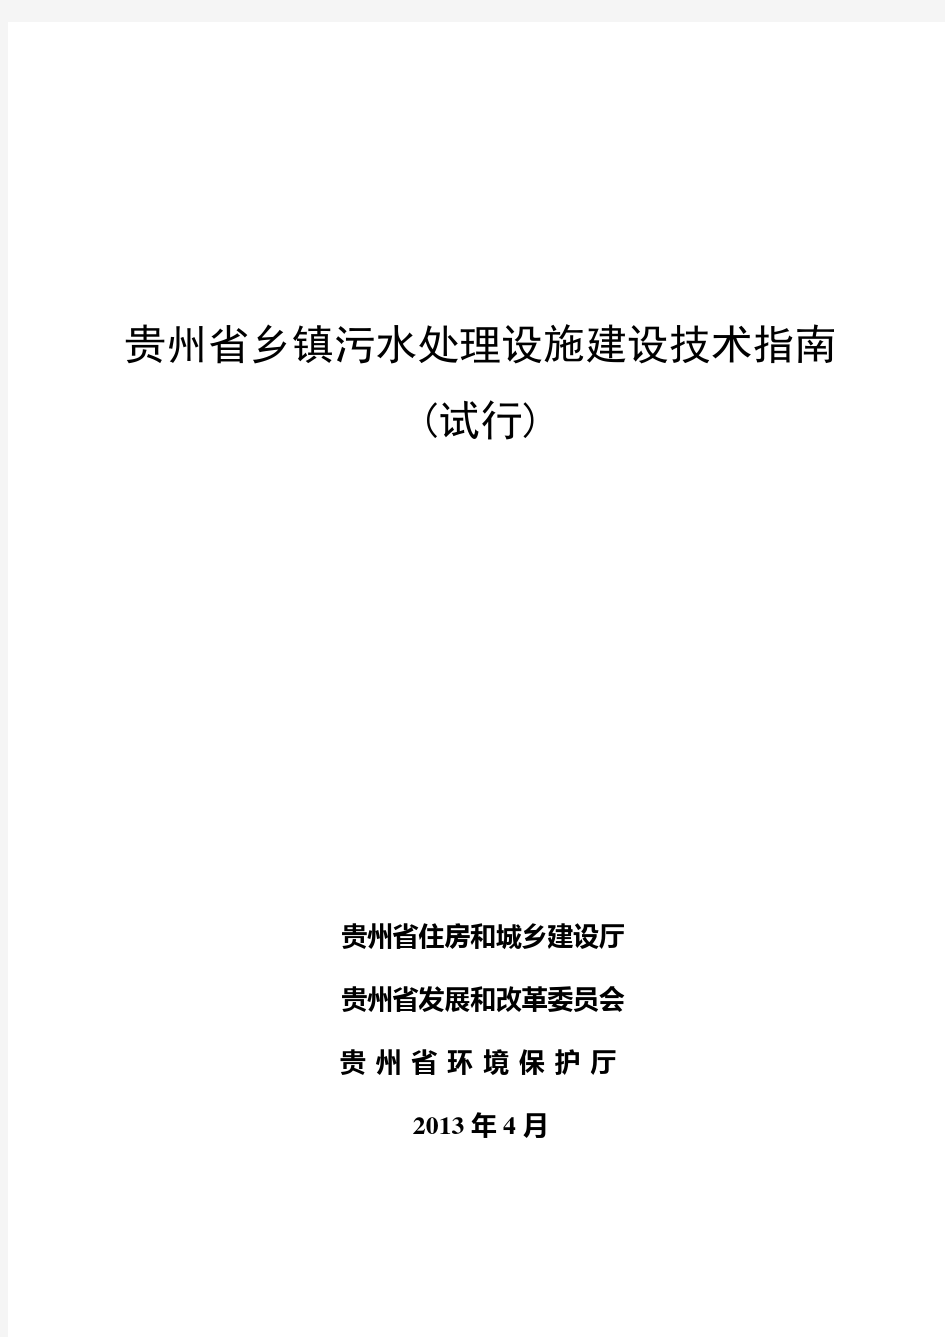 贵州省乡镇污水处理设施建设技术指南(试行)